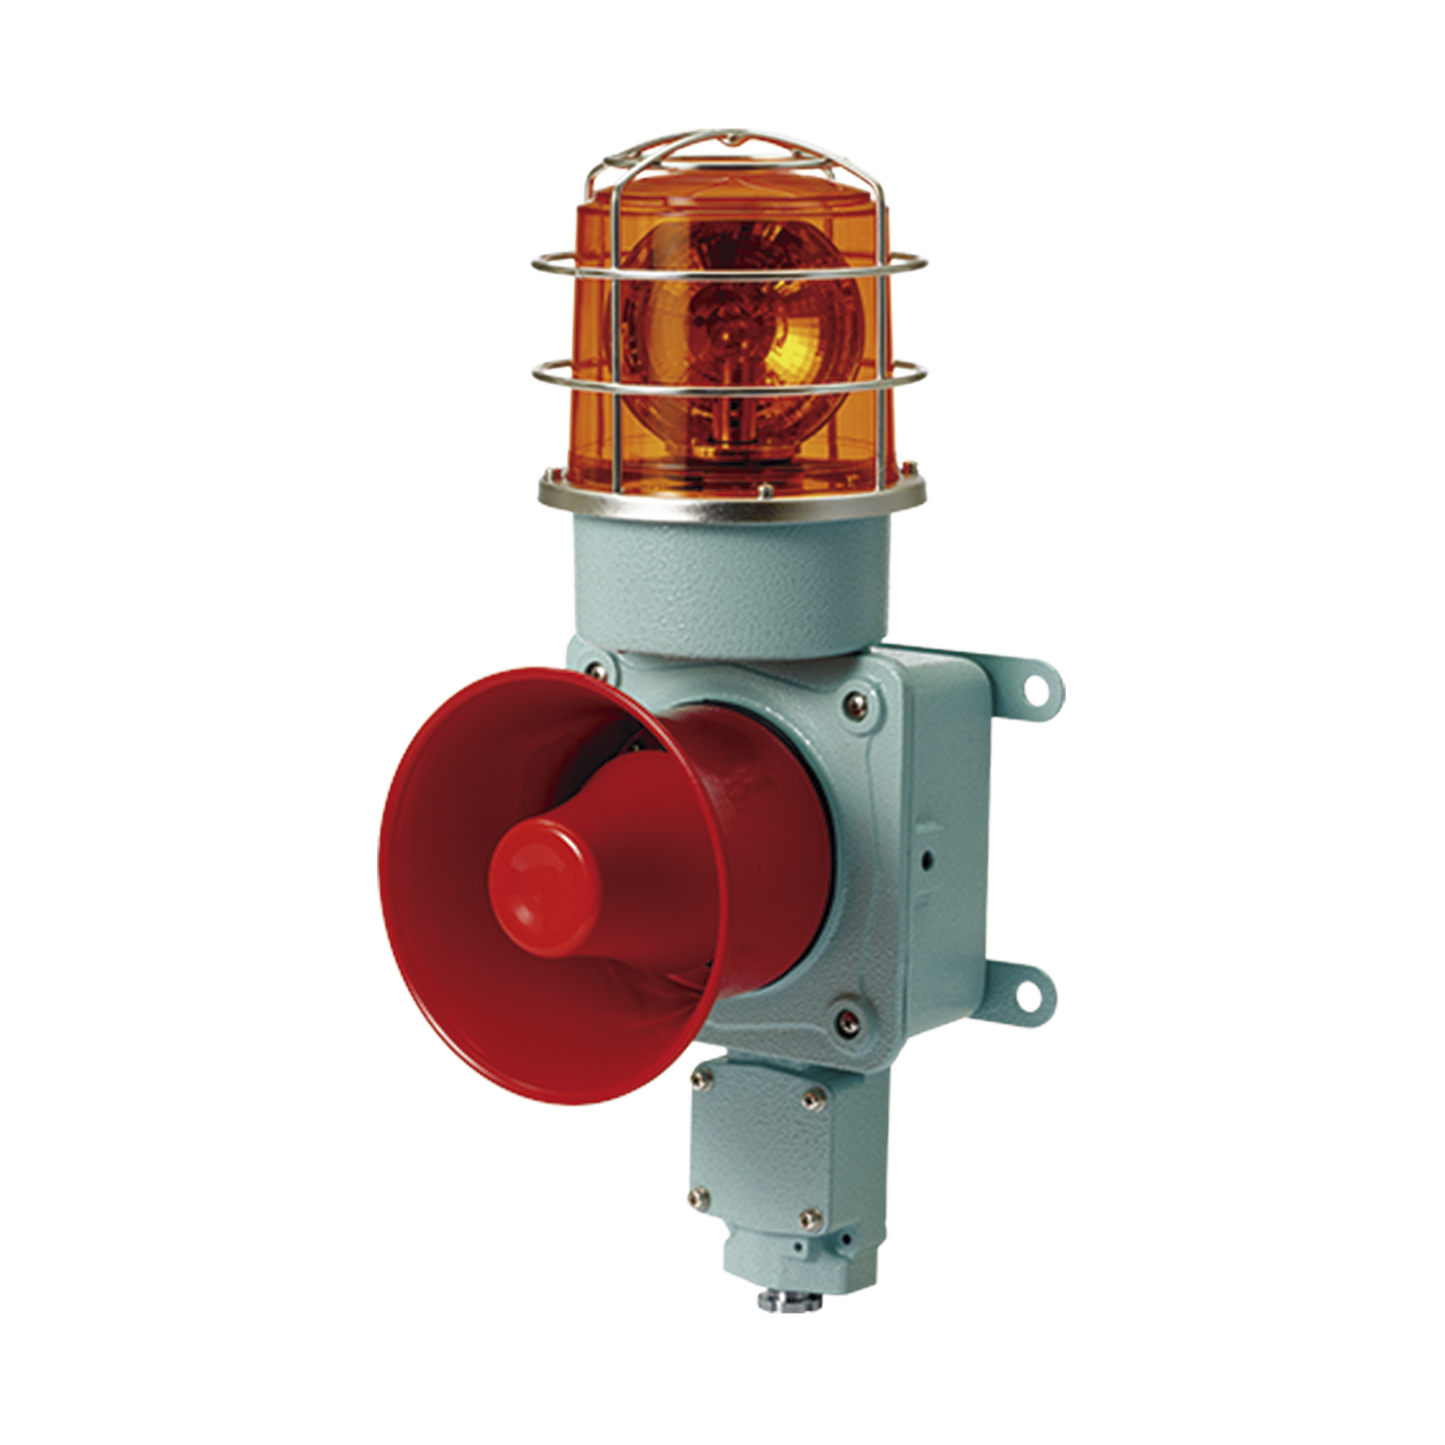 Combinación de luz de advertencia giratoria color Ámbar con bocina eléctrica para aplicaciones de la industria a 24 VCD, máx. 120 dB